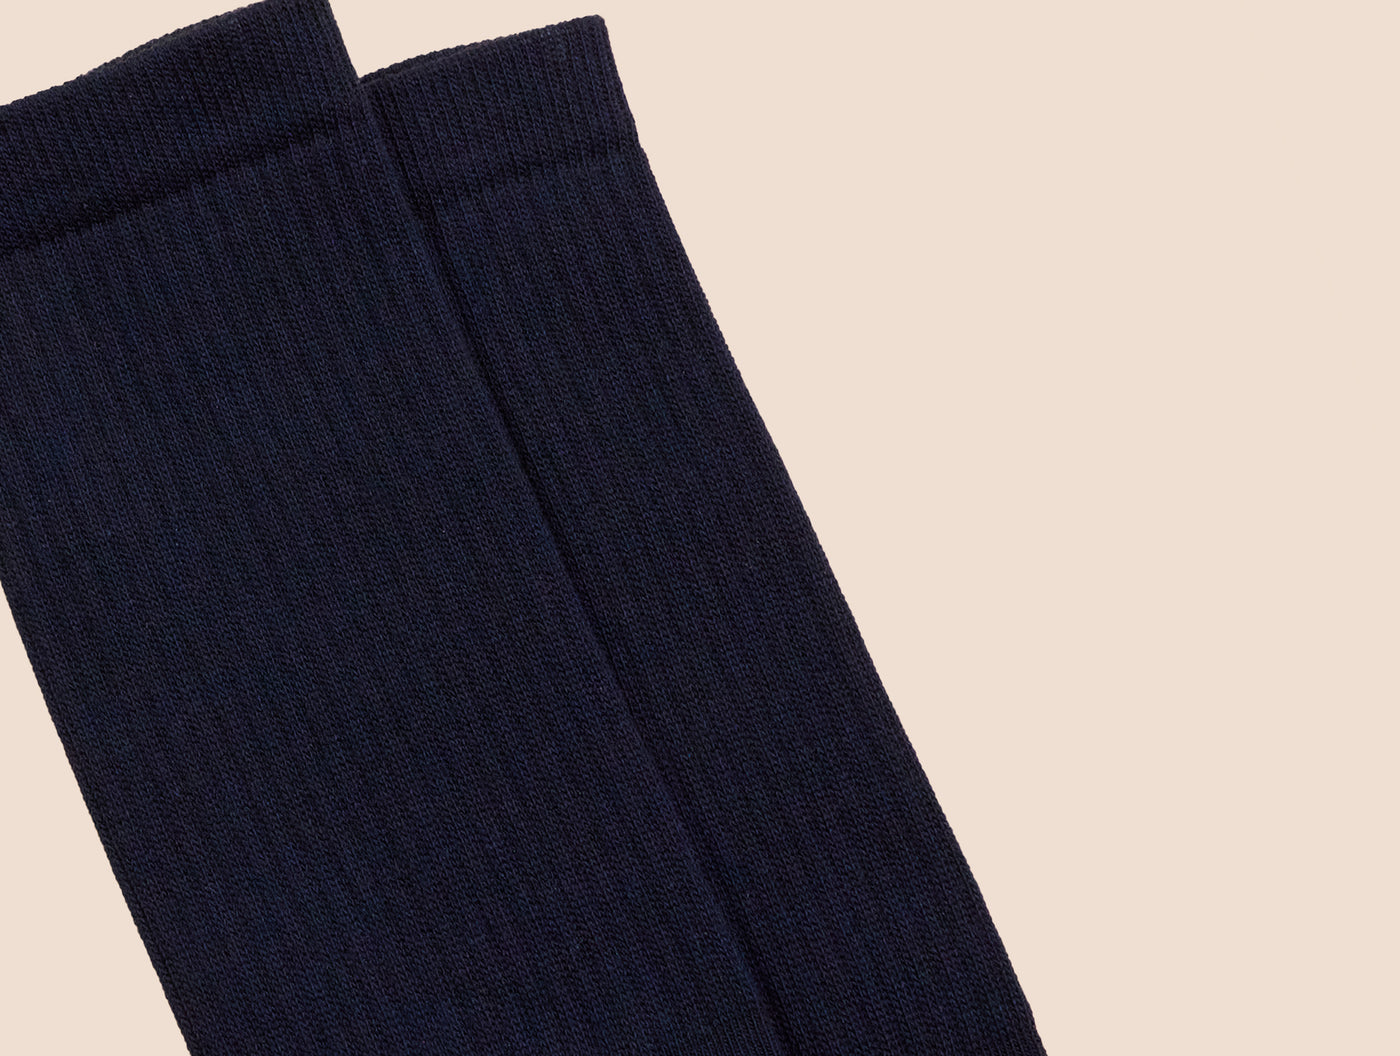 Petrone-chaussettes-tennis-coton-bio-unies-hautes-homme-bleu marine-posees#couleur_bleu marine